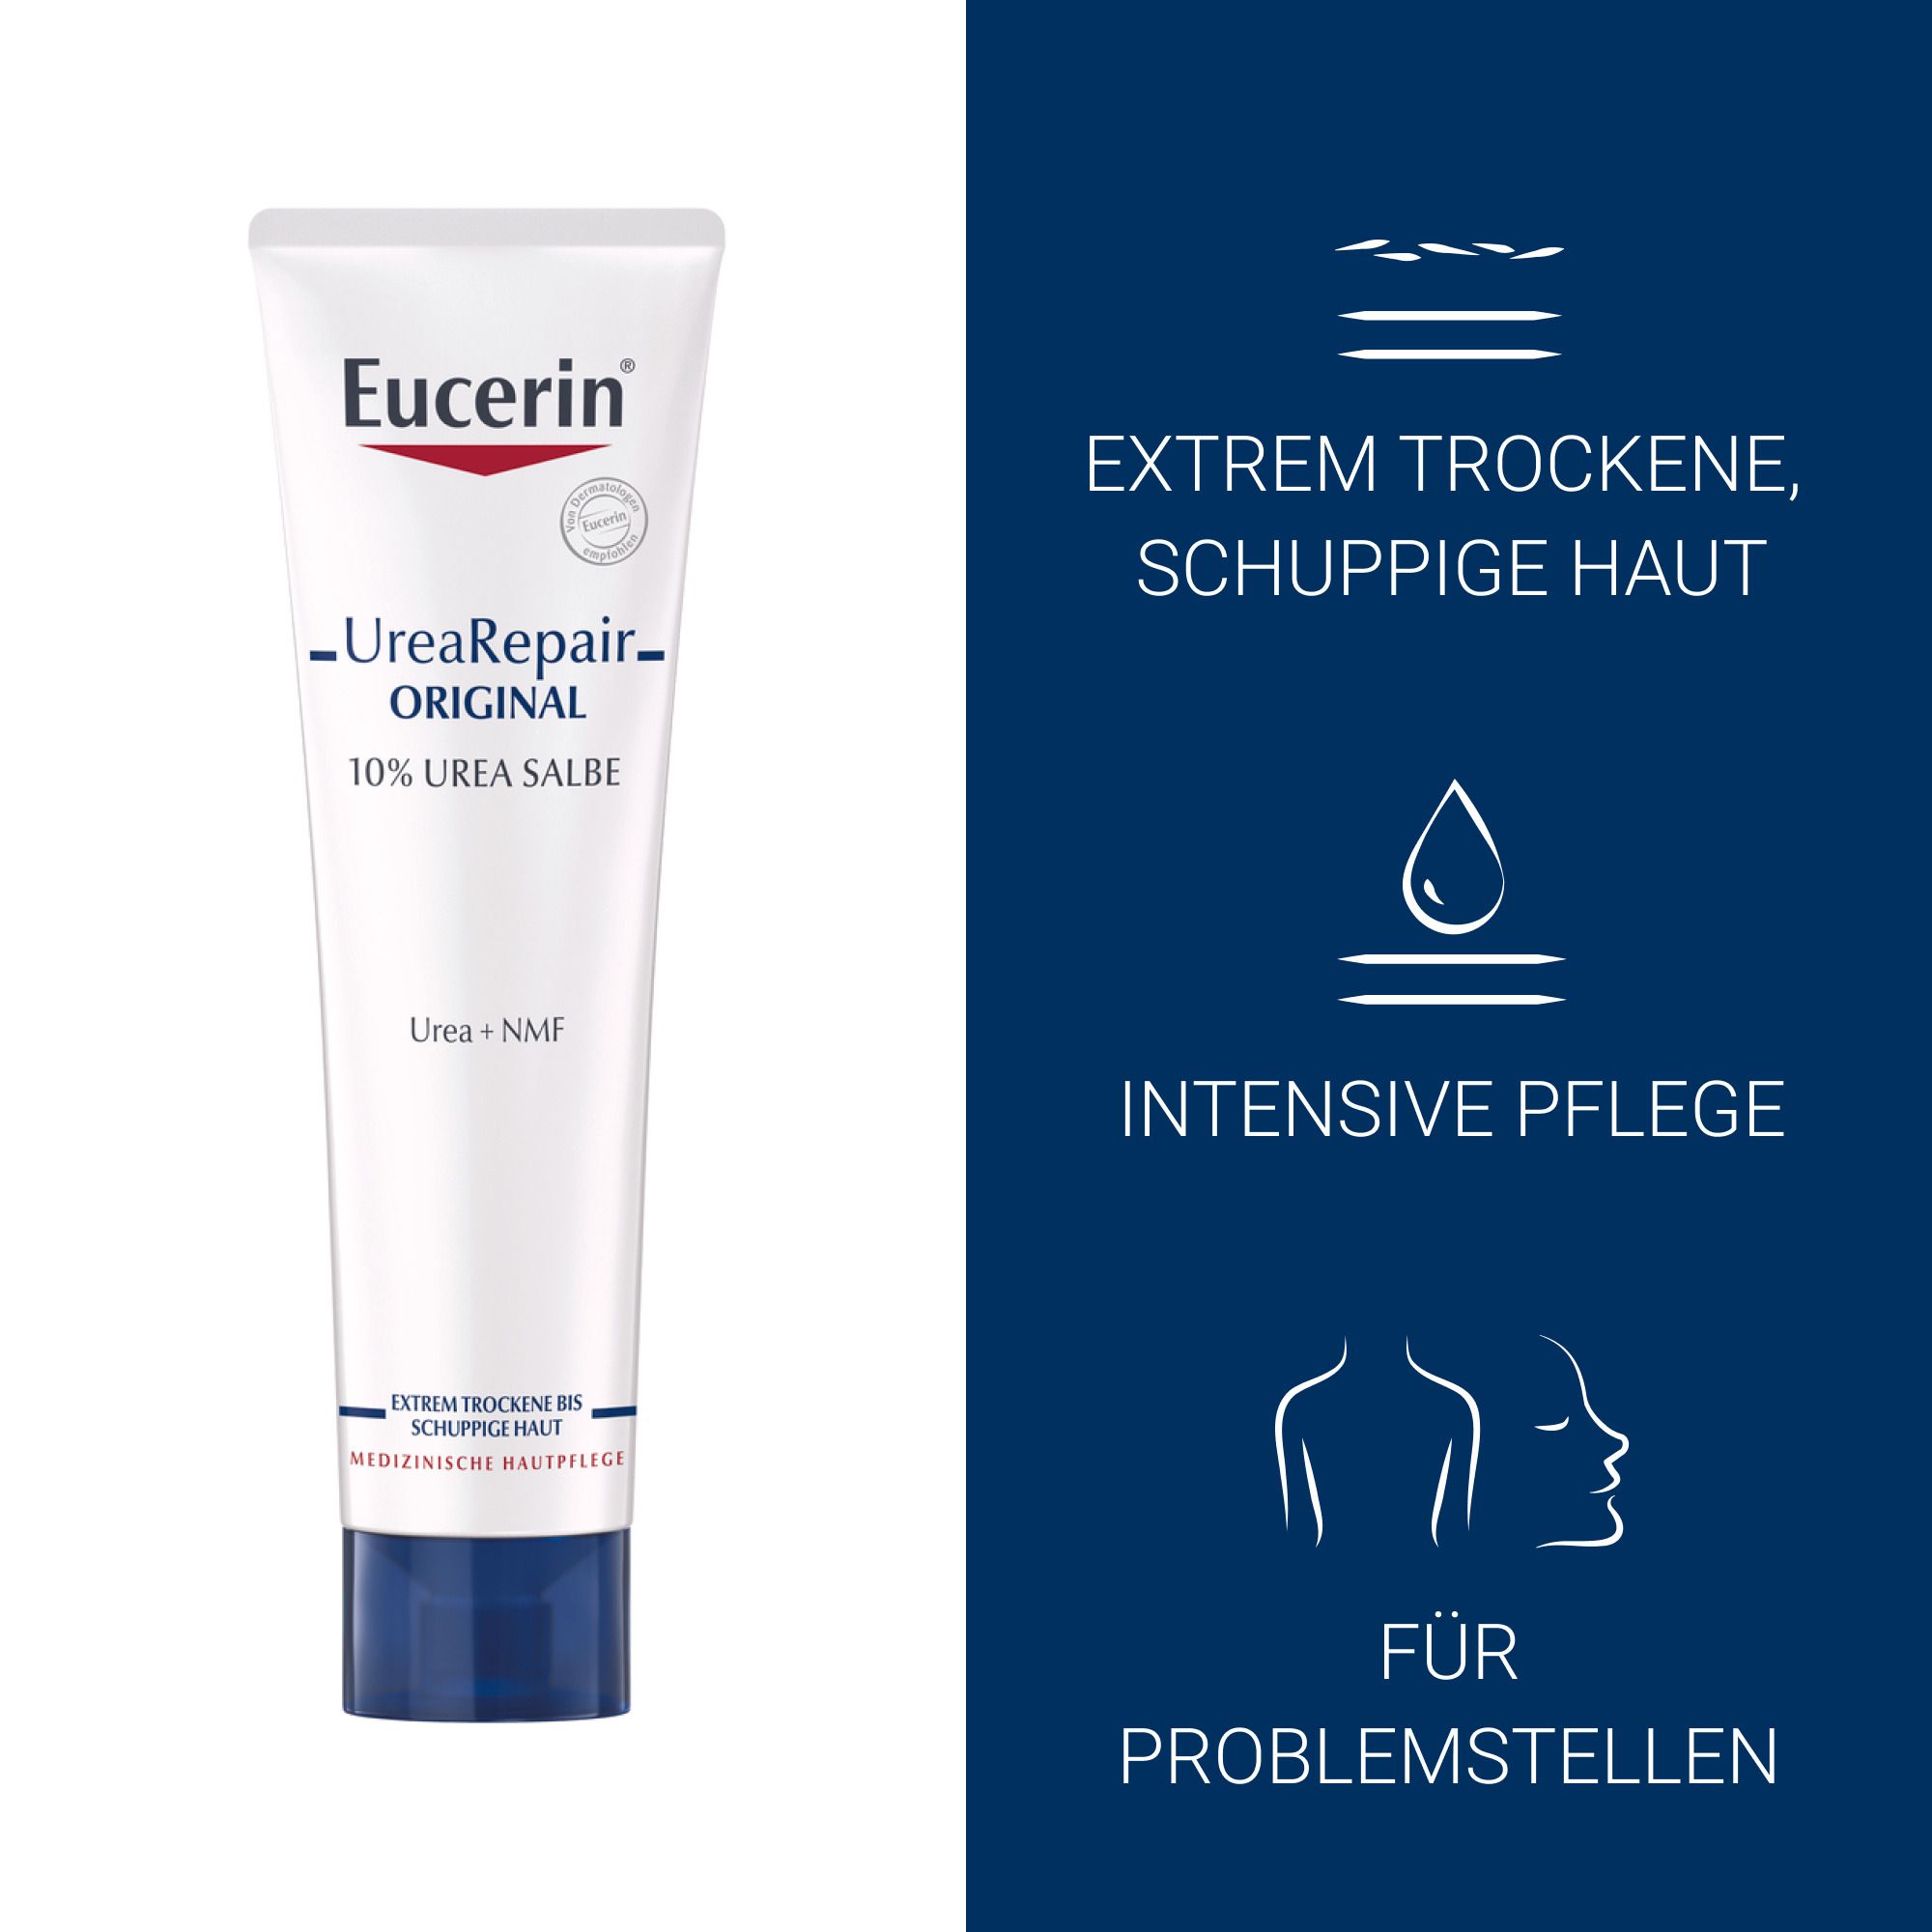 Eucerin® UreaRepair Original Salbe 10% – Intensivpflege für sehr trockene bis schuppige, juckende Haut - Jetzt 20% sparen mit Code "sommer20"